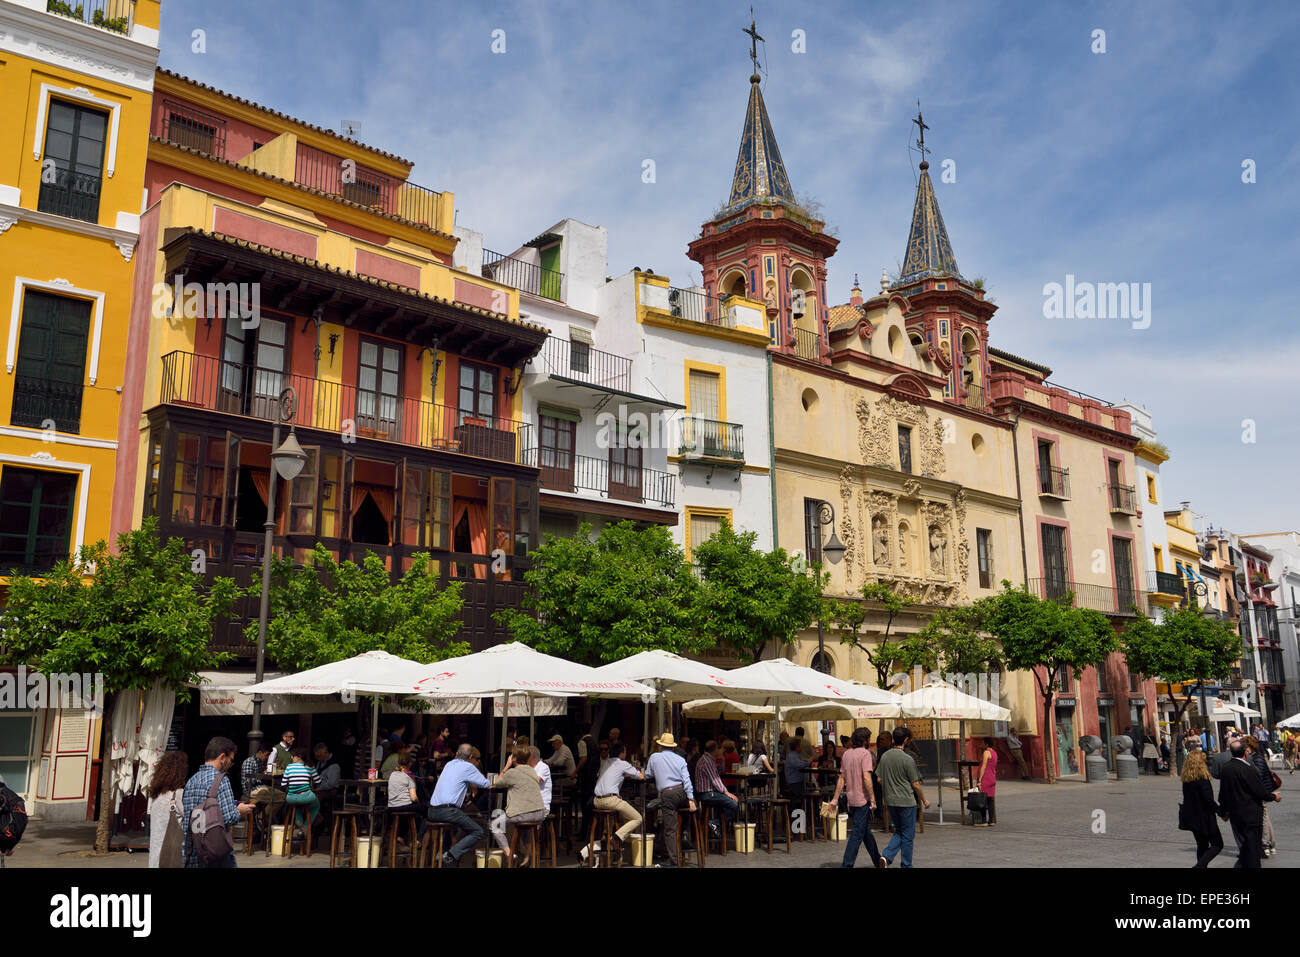 Massen von Touristen am Plaza del Salvador Sevilla Spanien mit zwei Glockentürmen der Kirche San Juan de Dios Stockfoto